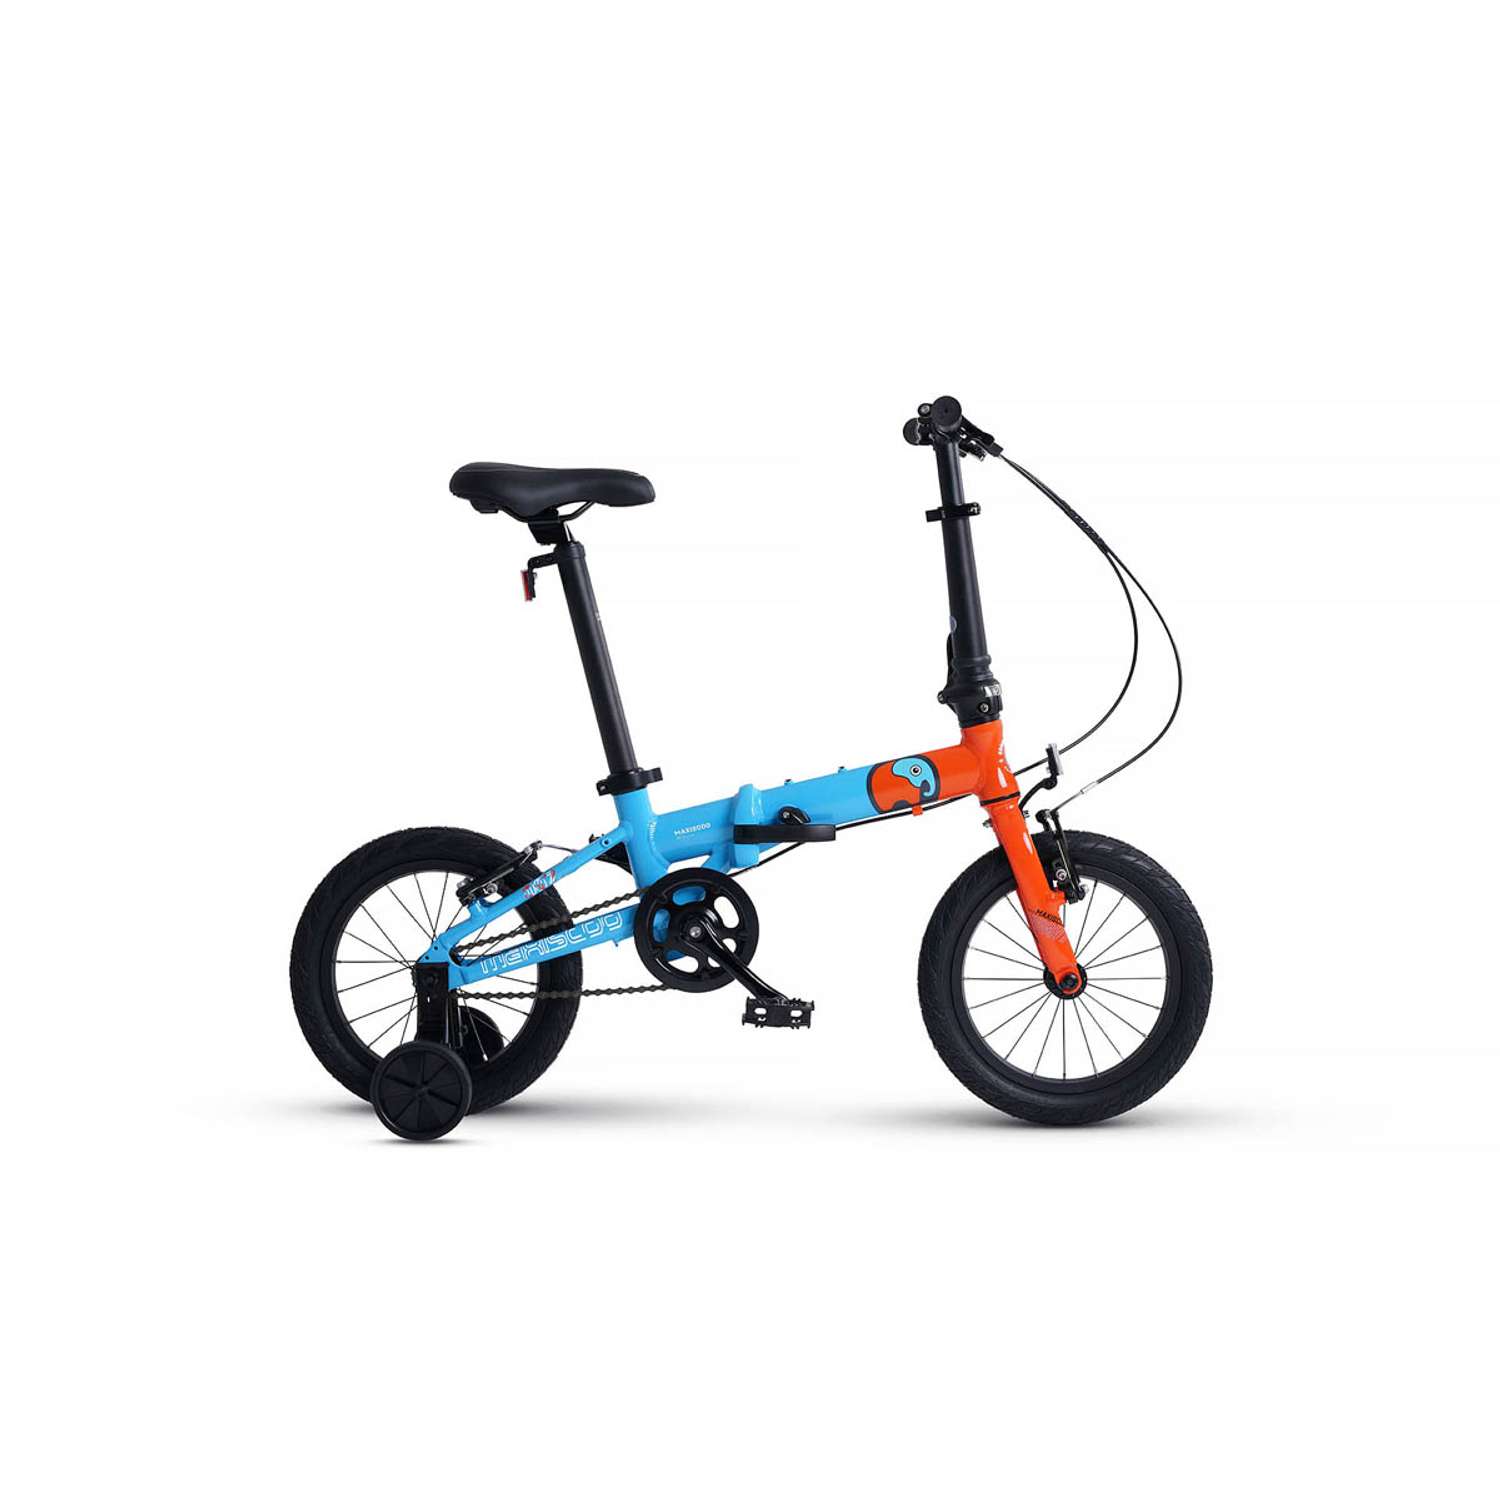 Велосипед Детский Складной Maxiscoo S007 pro 14 синий с оранжевым - фото 1